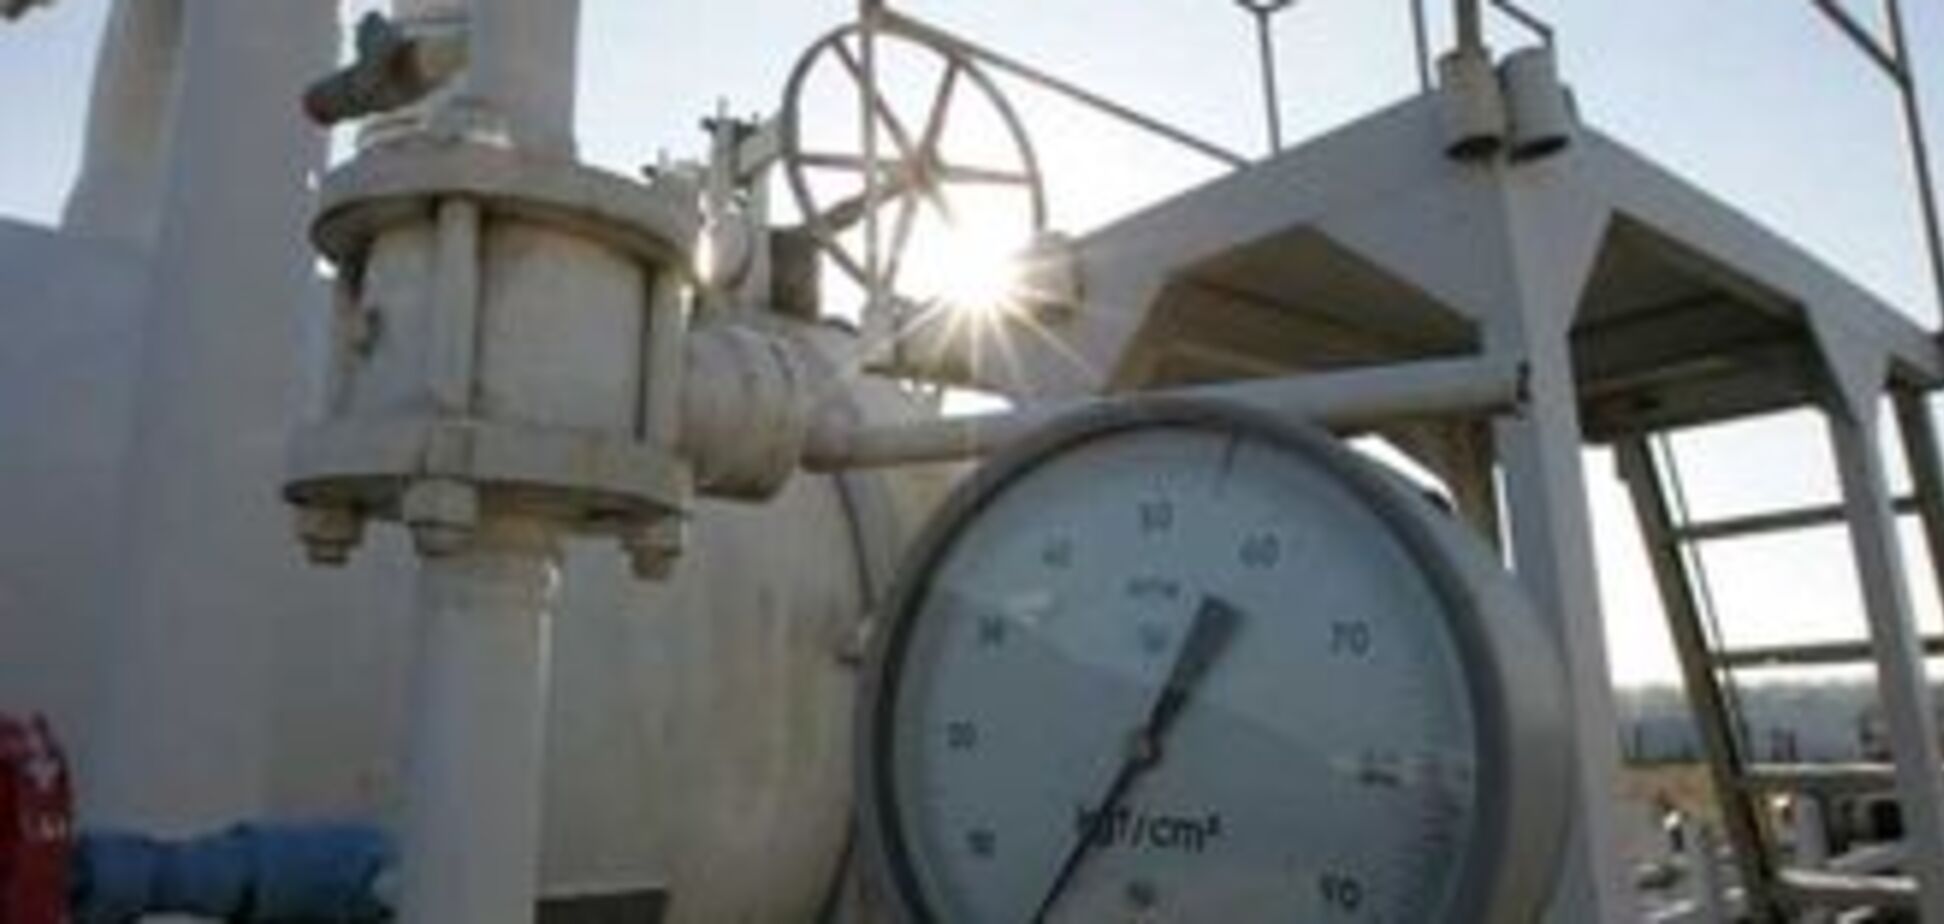 Цены на газ в России подскочат на 15%